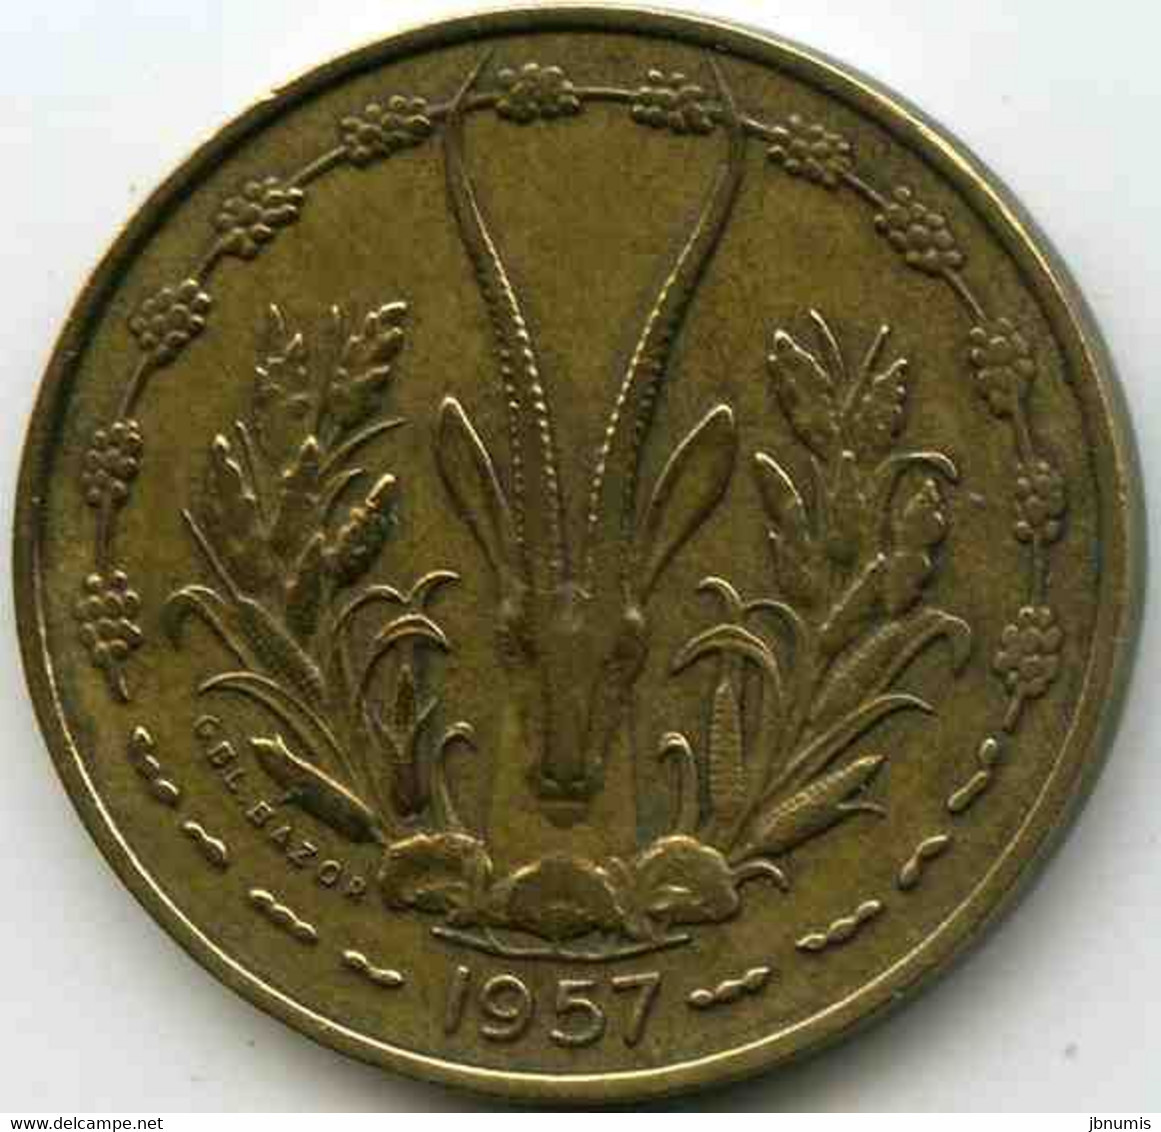 France Afrique Occidentale West Africa Togo 10 Francs 1957 KM 8 - Französisch-Westafrika